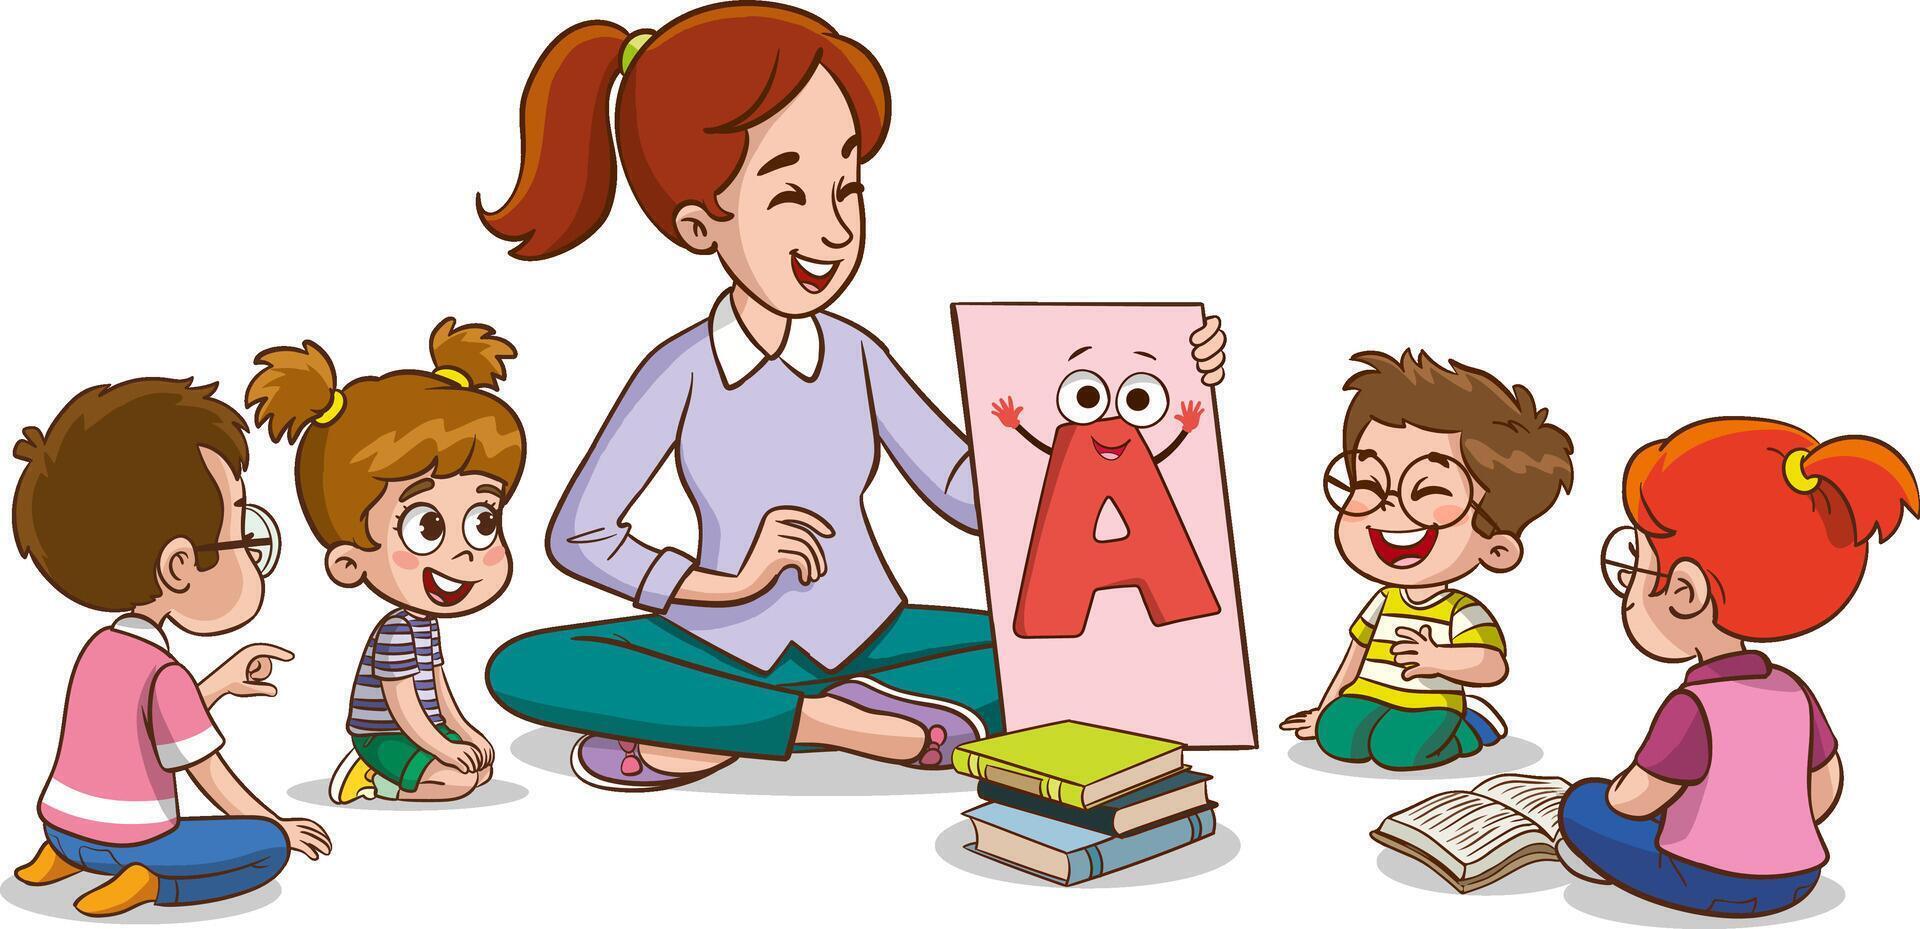 süß wenig Kinder Sitzung auf das Fußboden und studieren das Alphabet mit ihr Lehrer vektor